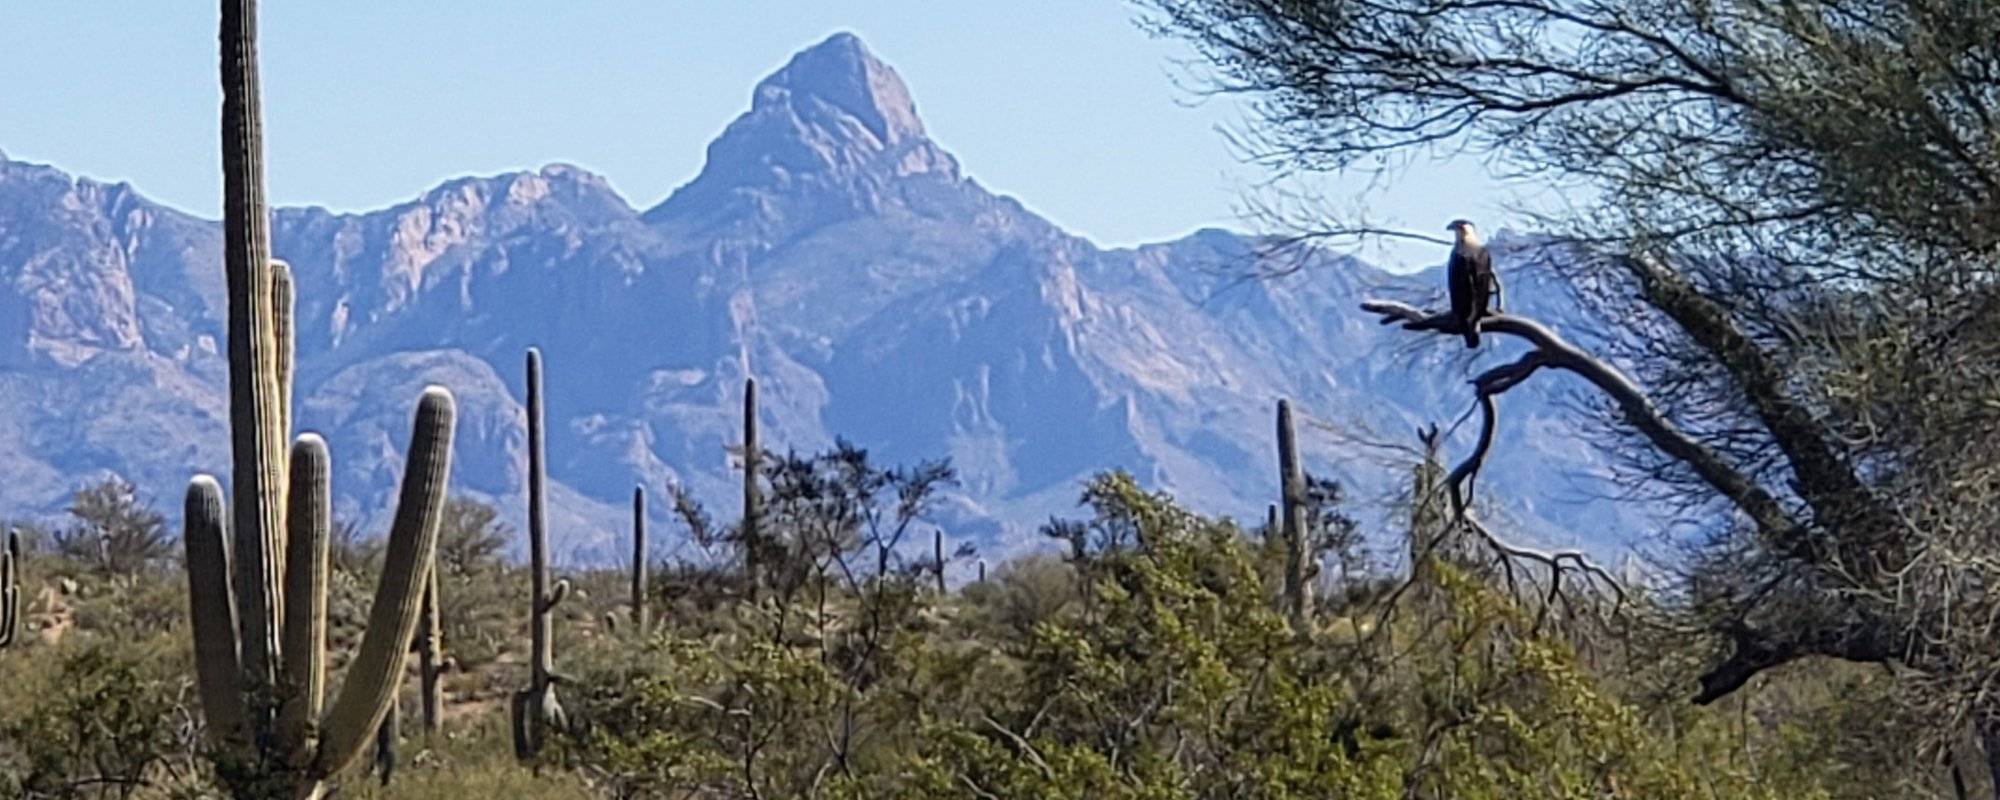 R2R Travelogue 5: Baboquivari, Sacred Peak in Arizona